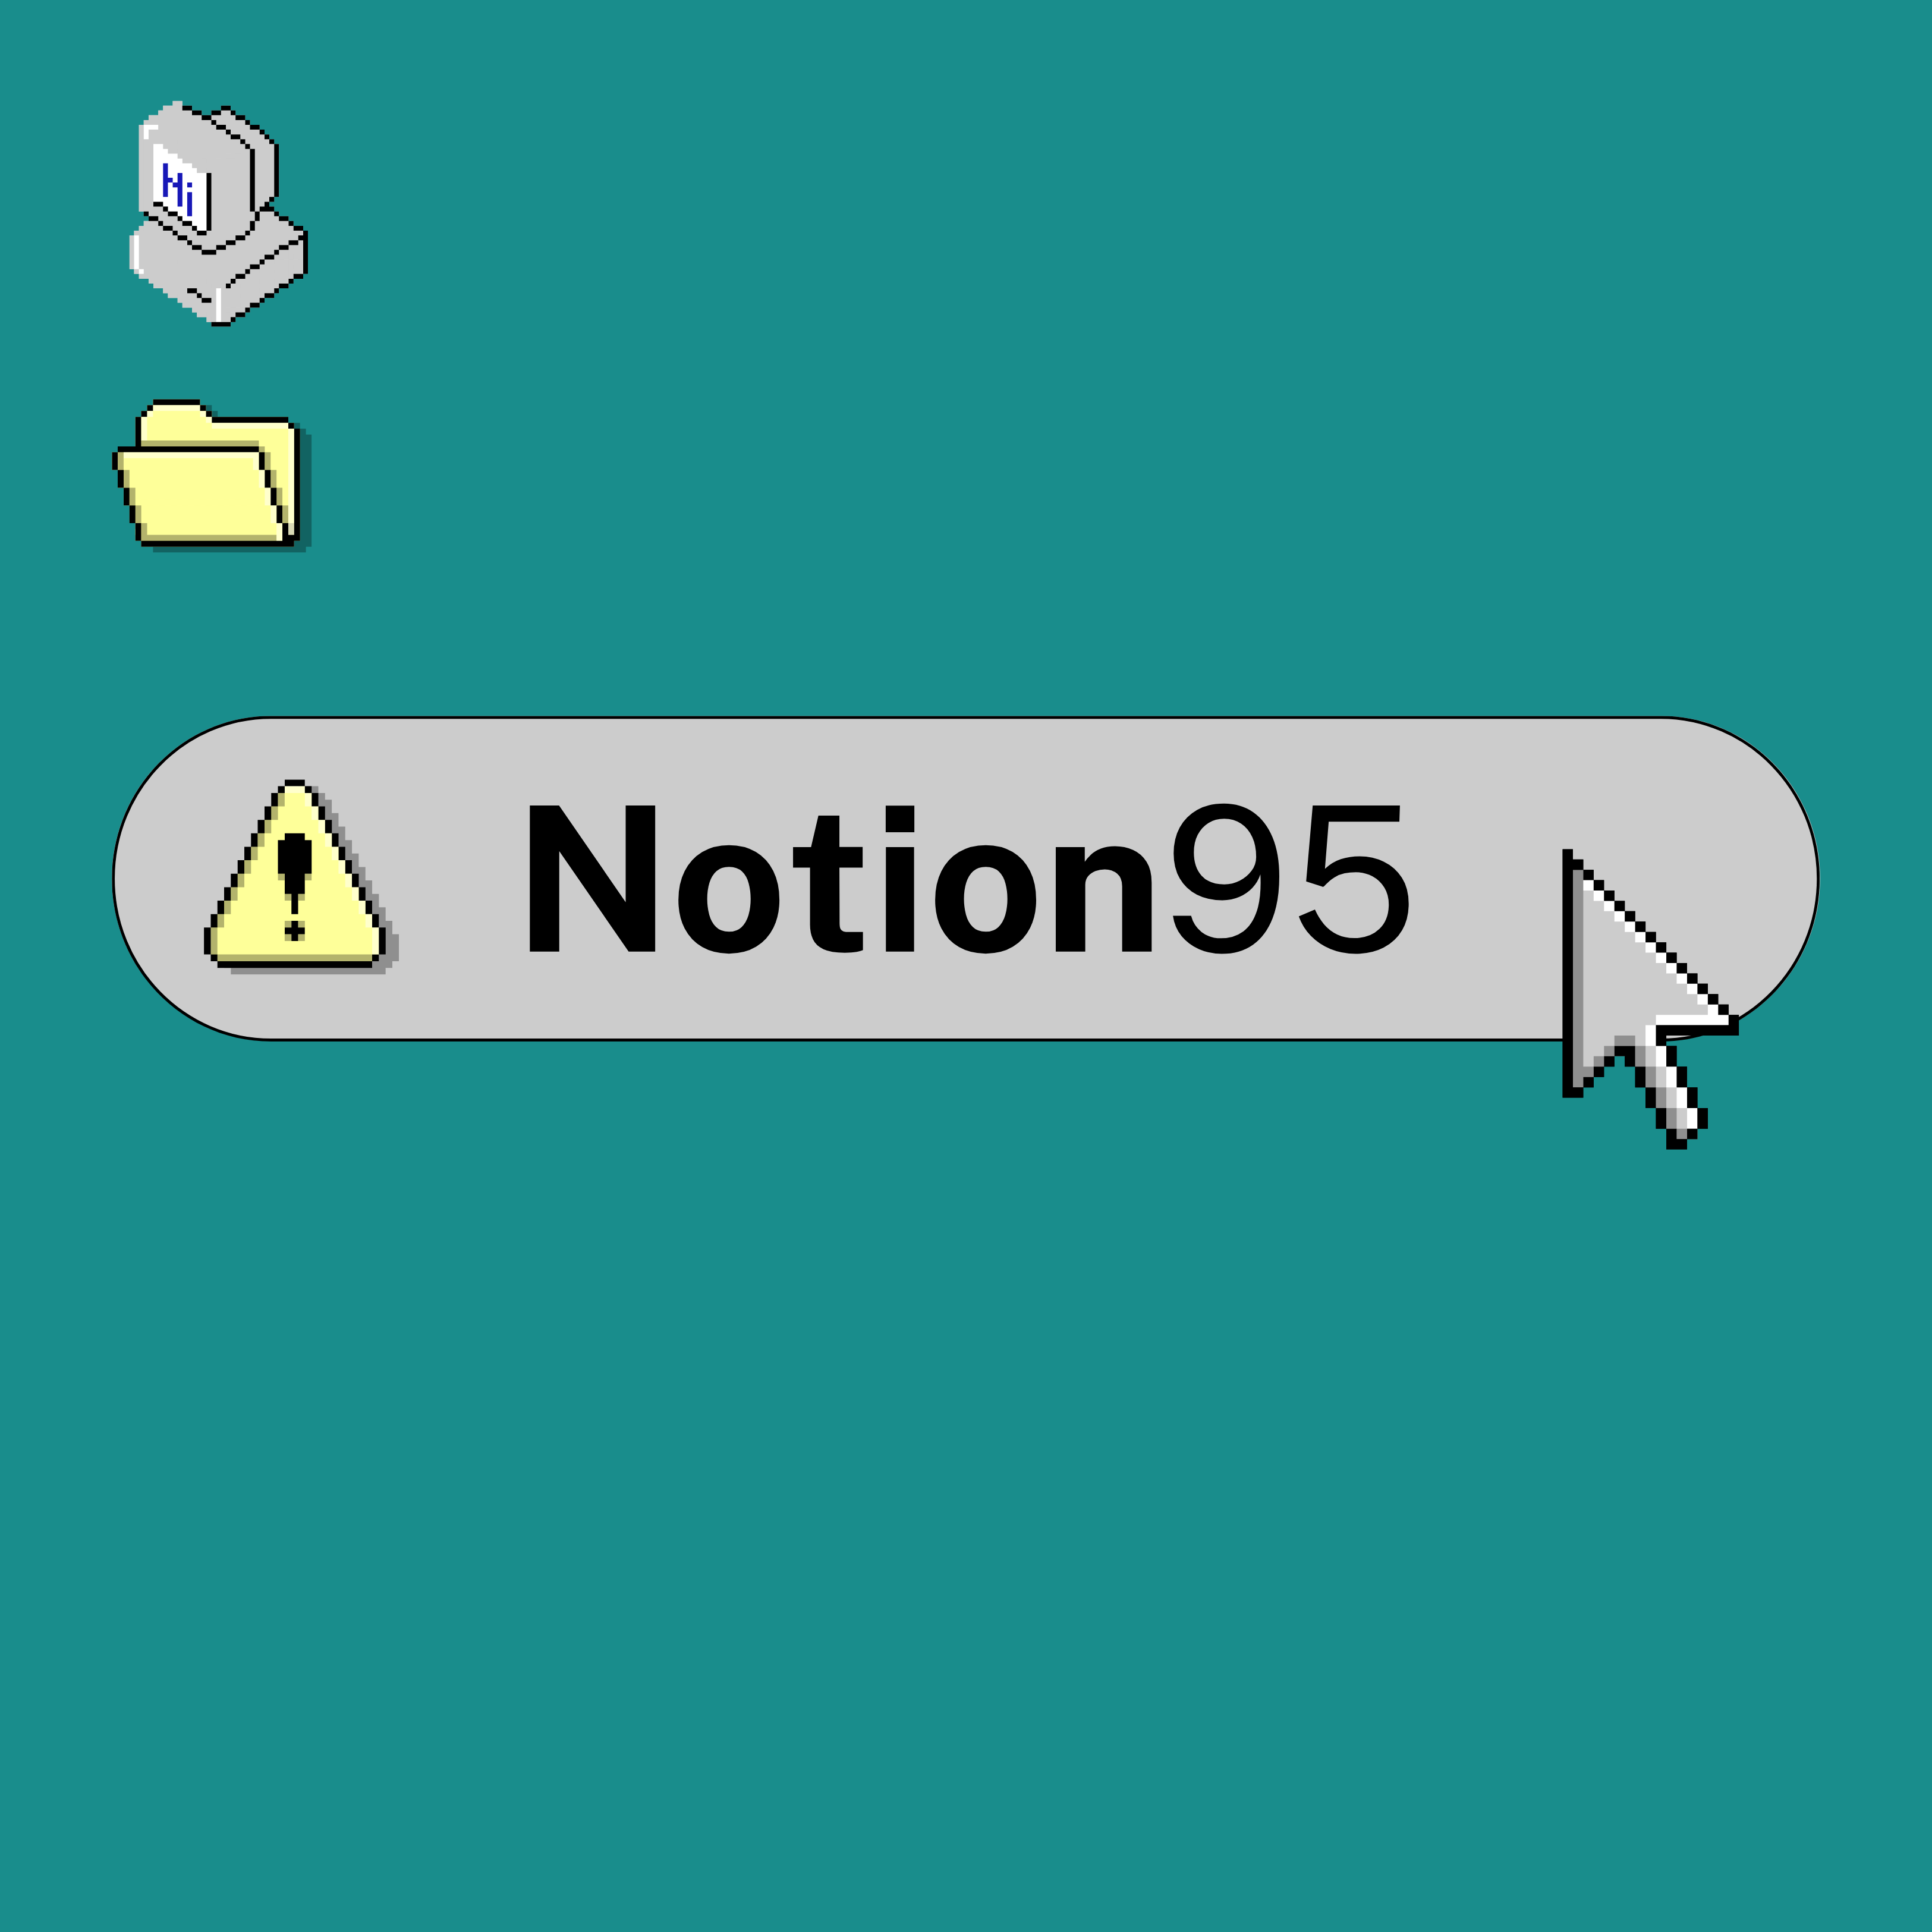 Notion 95 logo